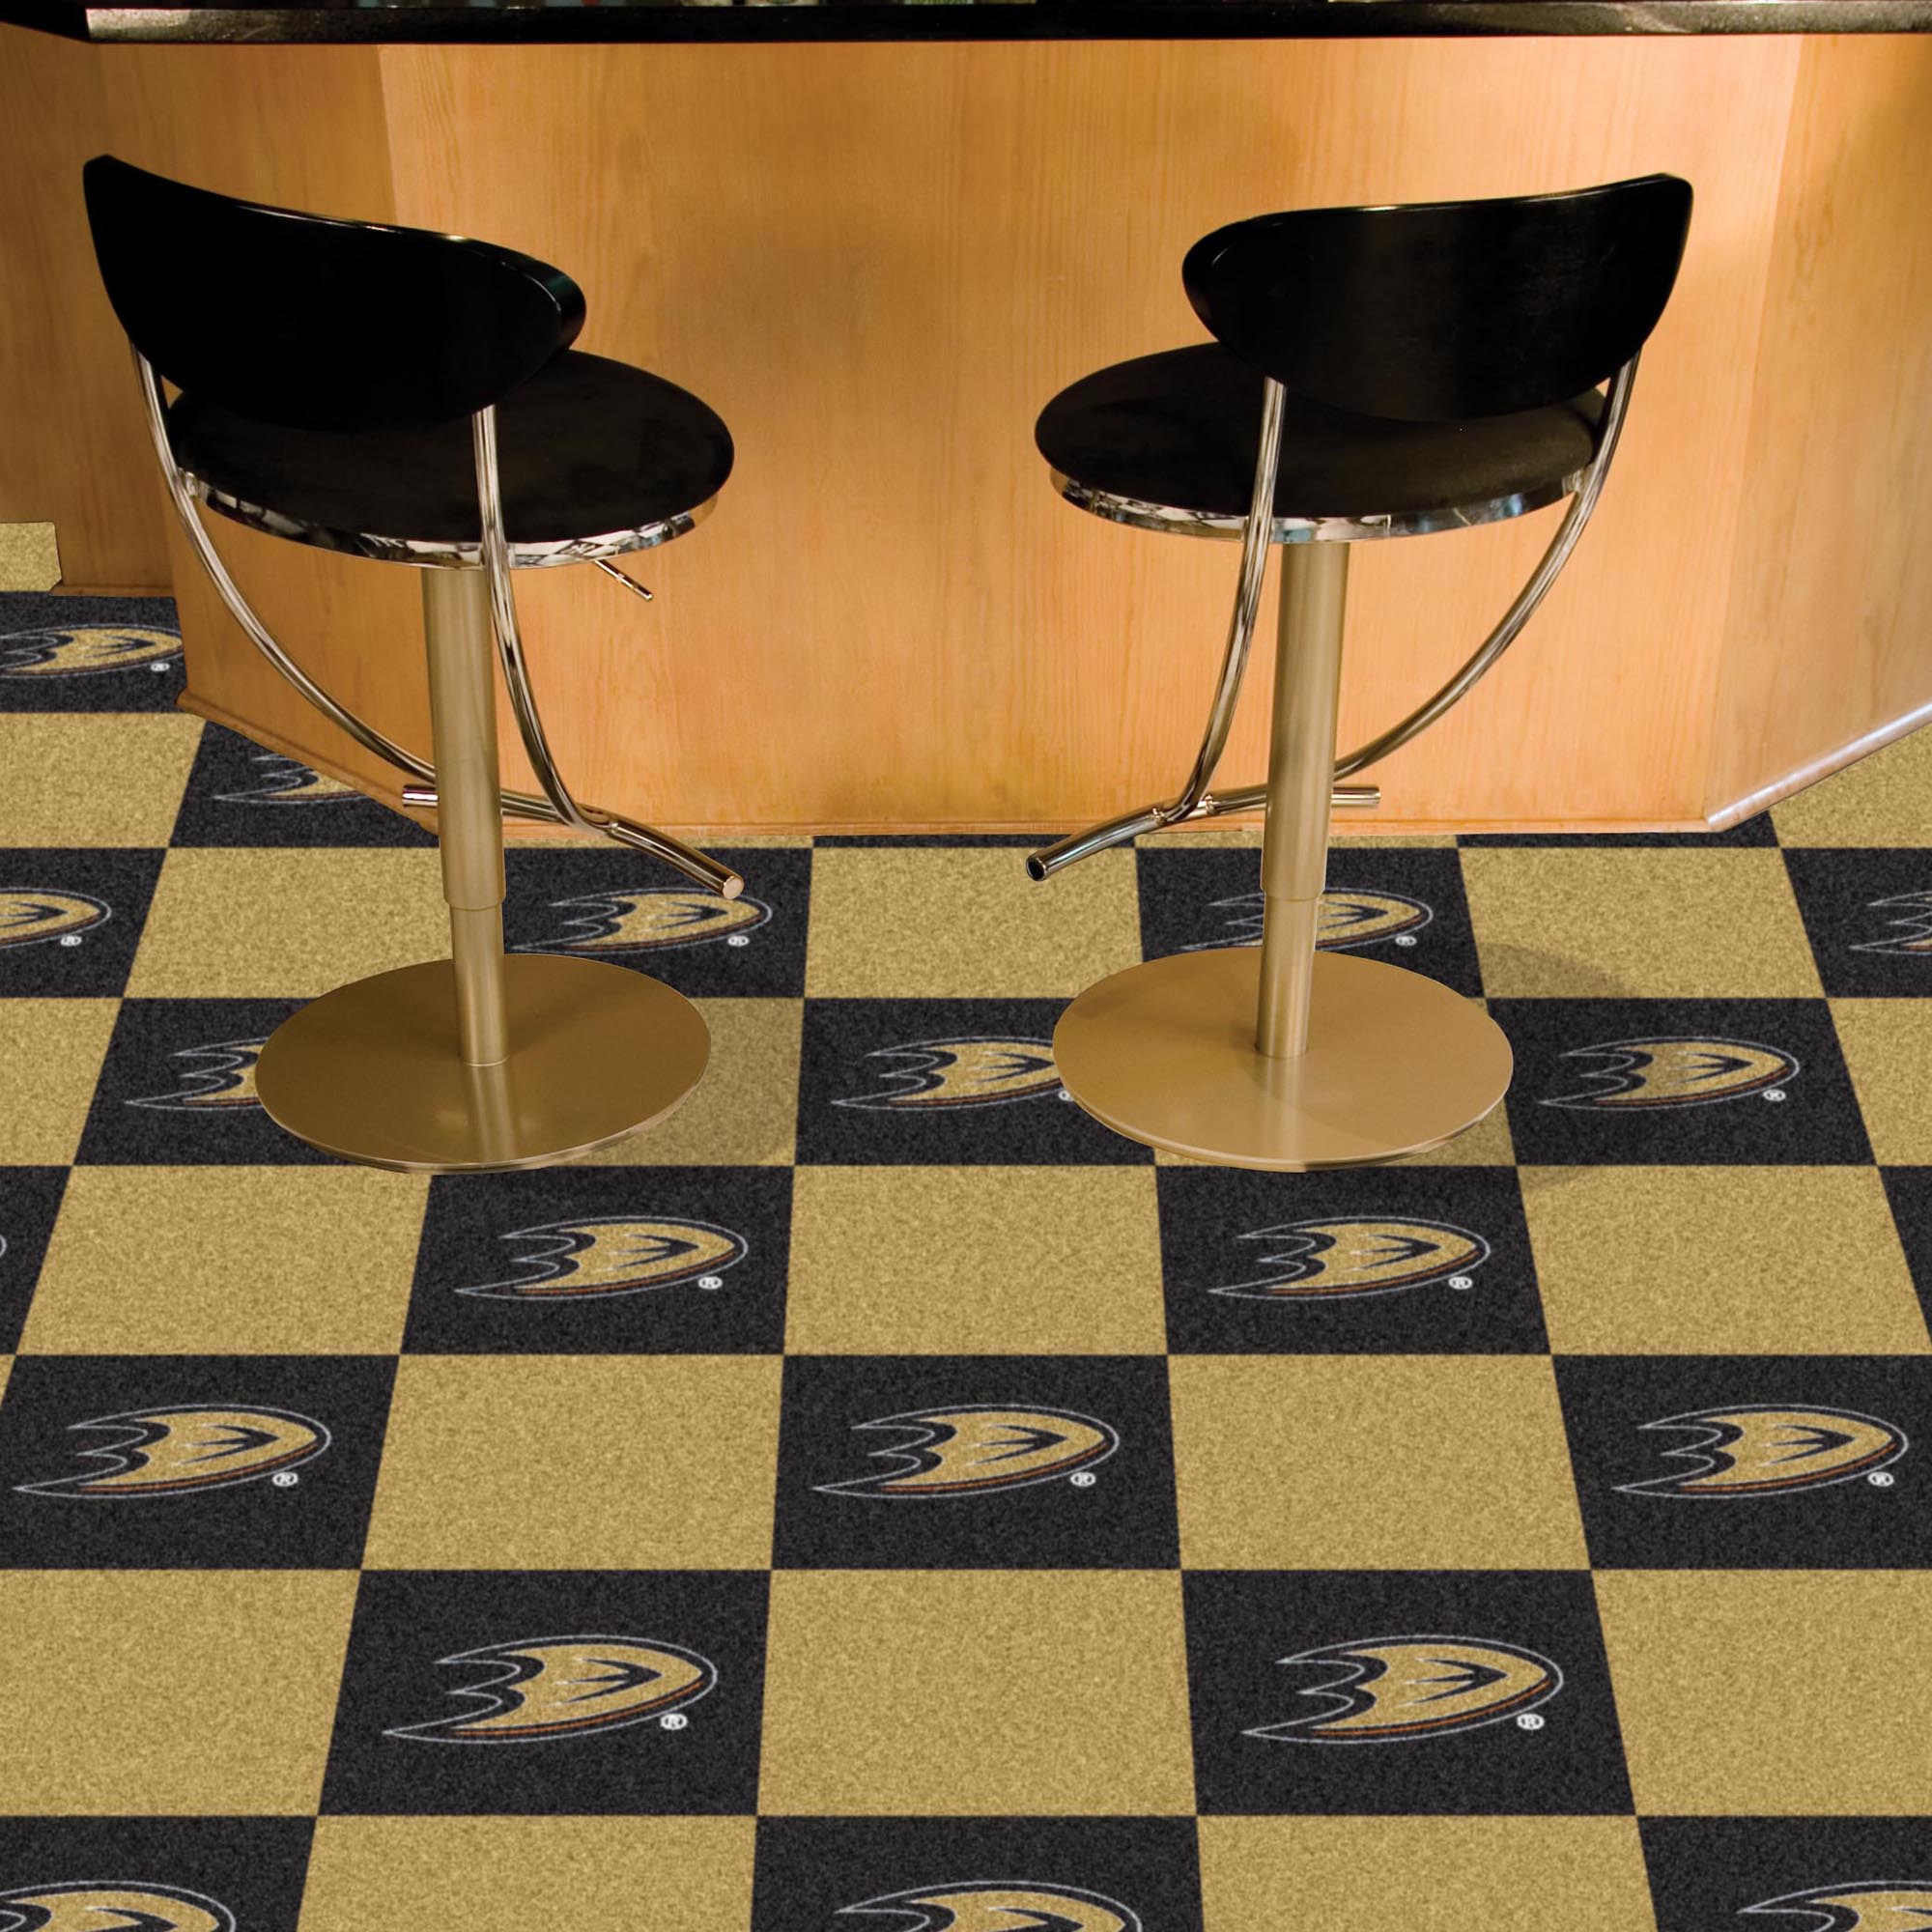 Anaheim Ducks Team Carpet Tiles - 45 sq ft